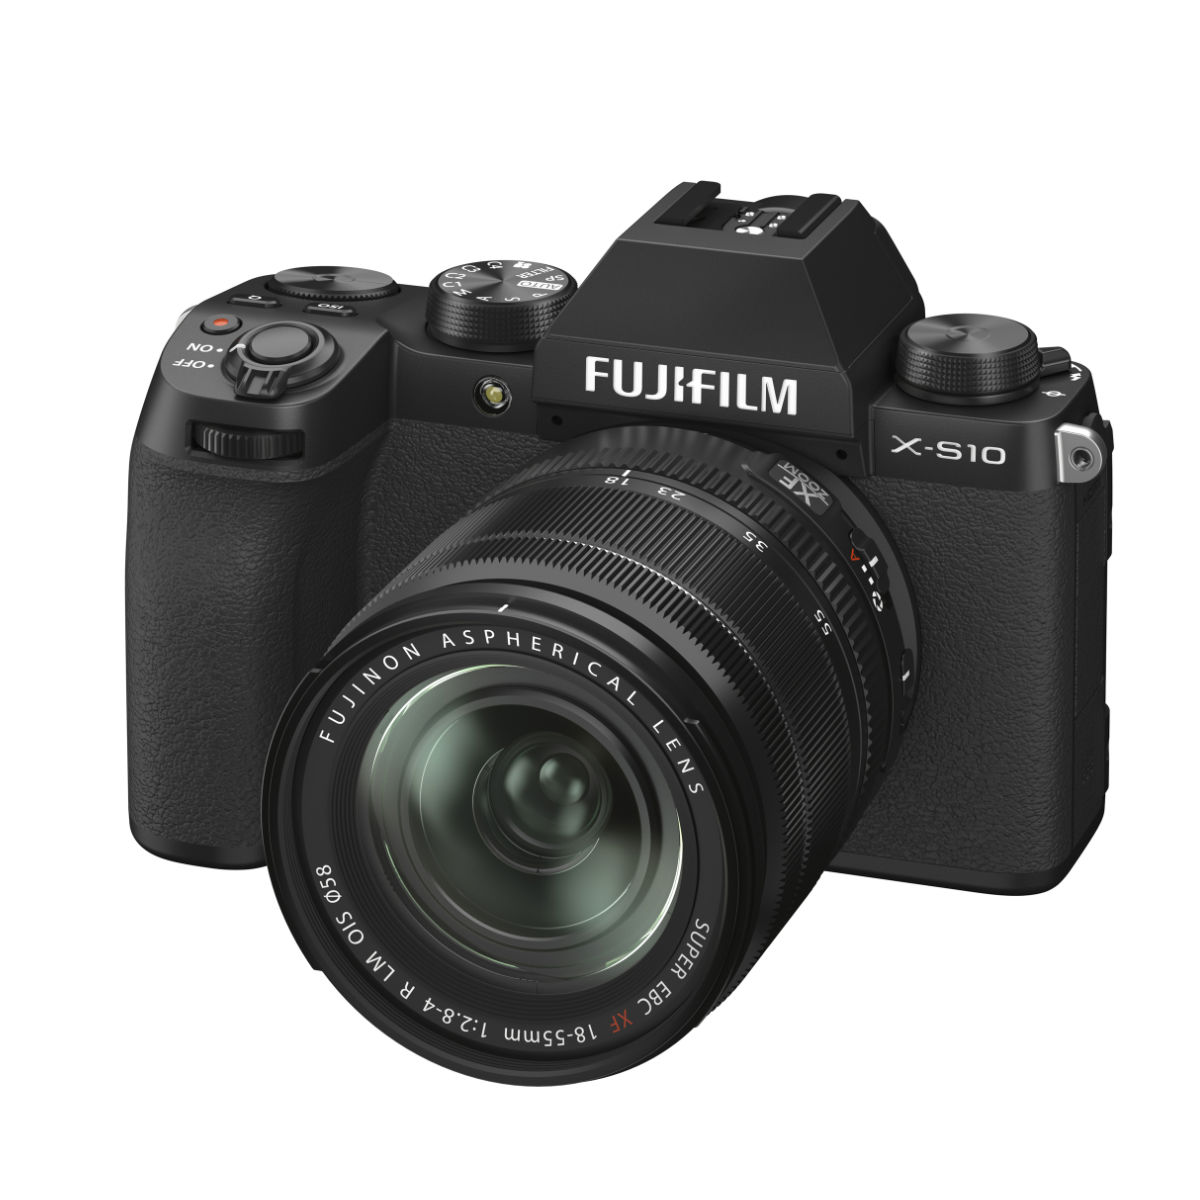 Fujifilm X-S10 with XF 18-55mm f/2.8-4